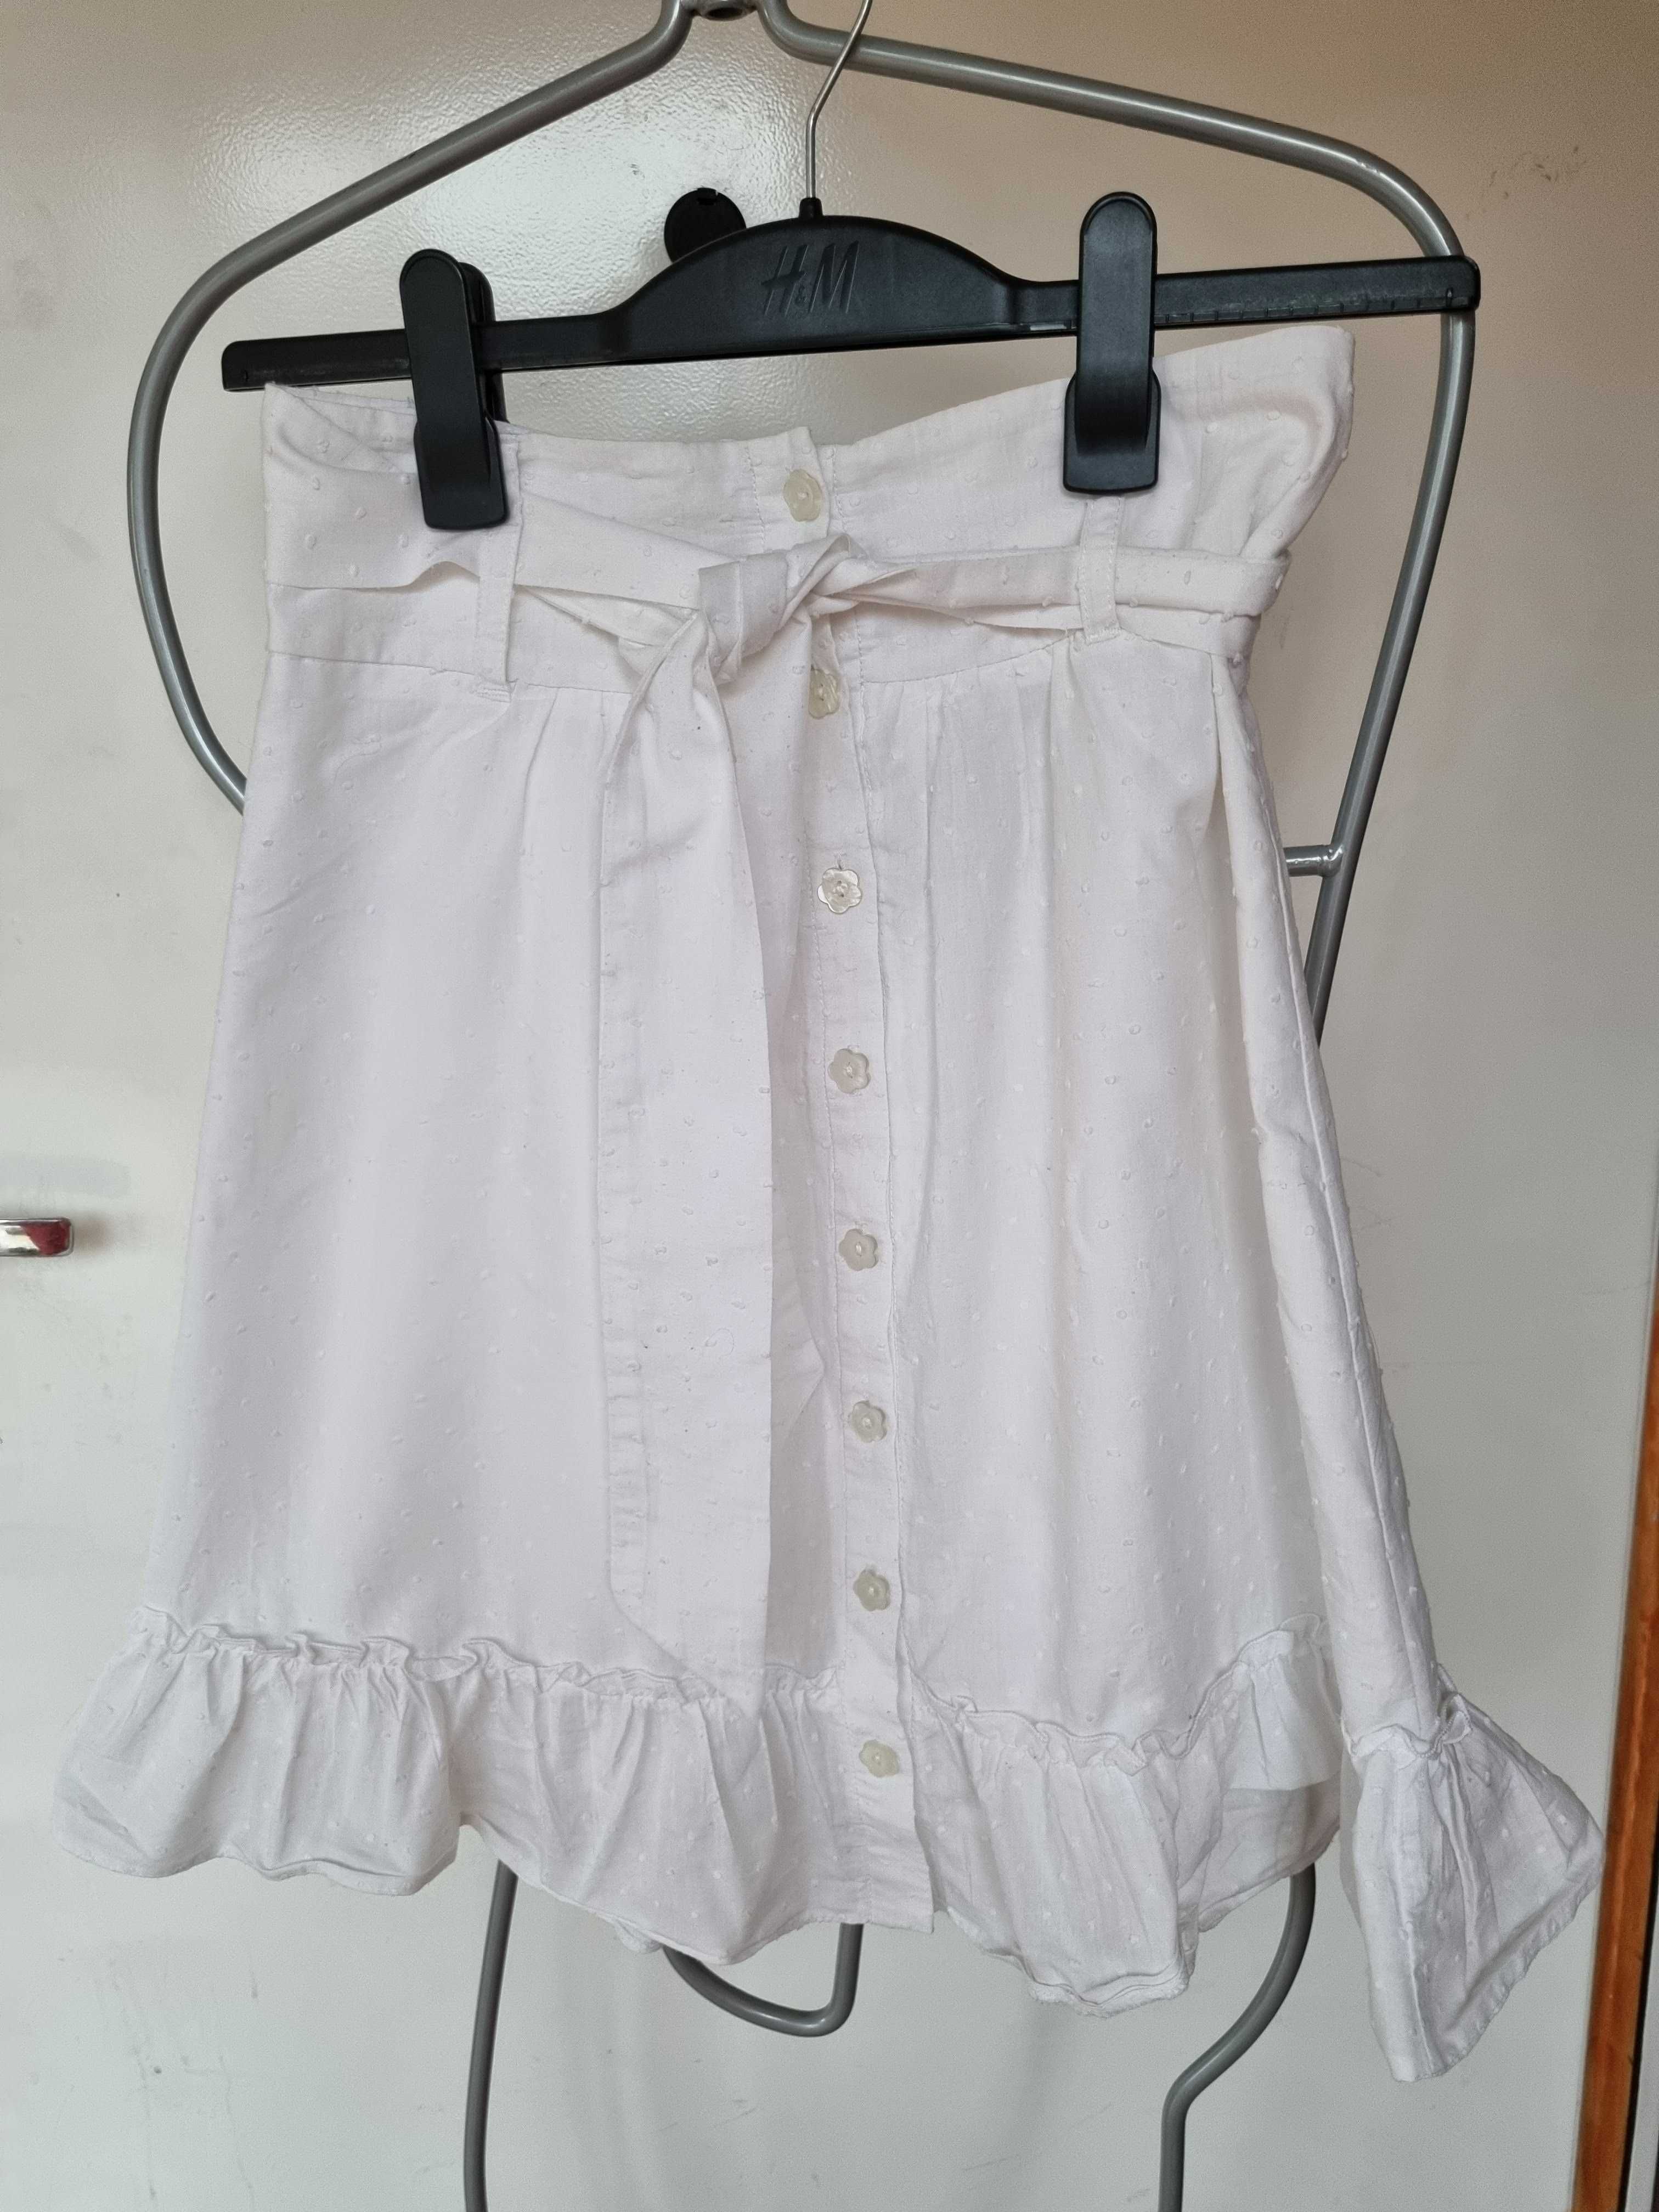 H&M spódnica biała letnia zwiewna romantyczna XS S 34